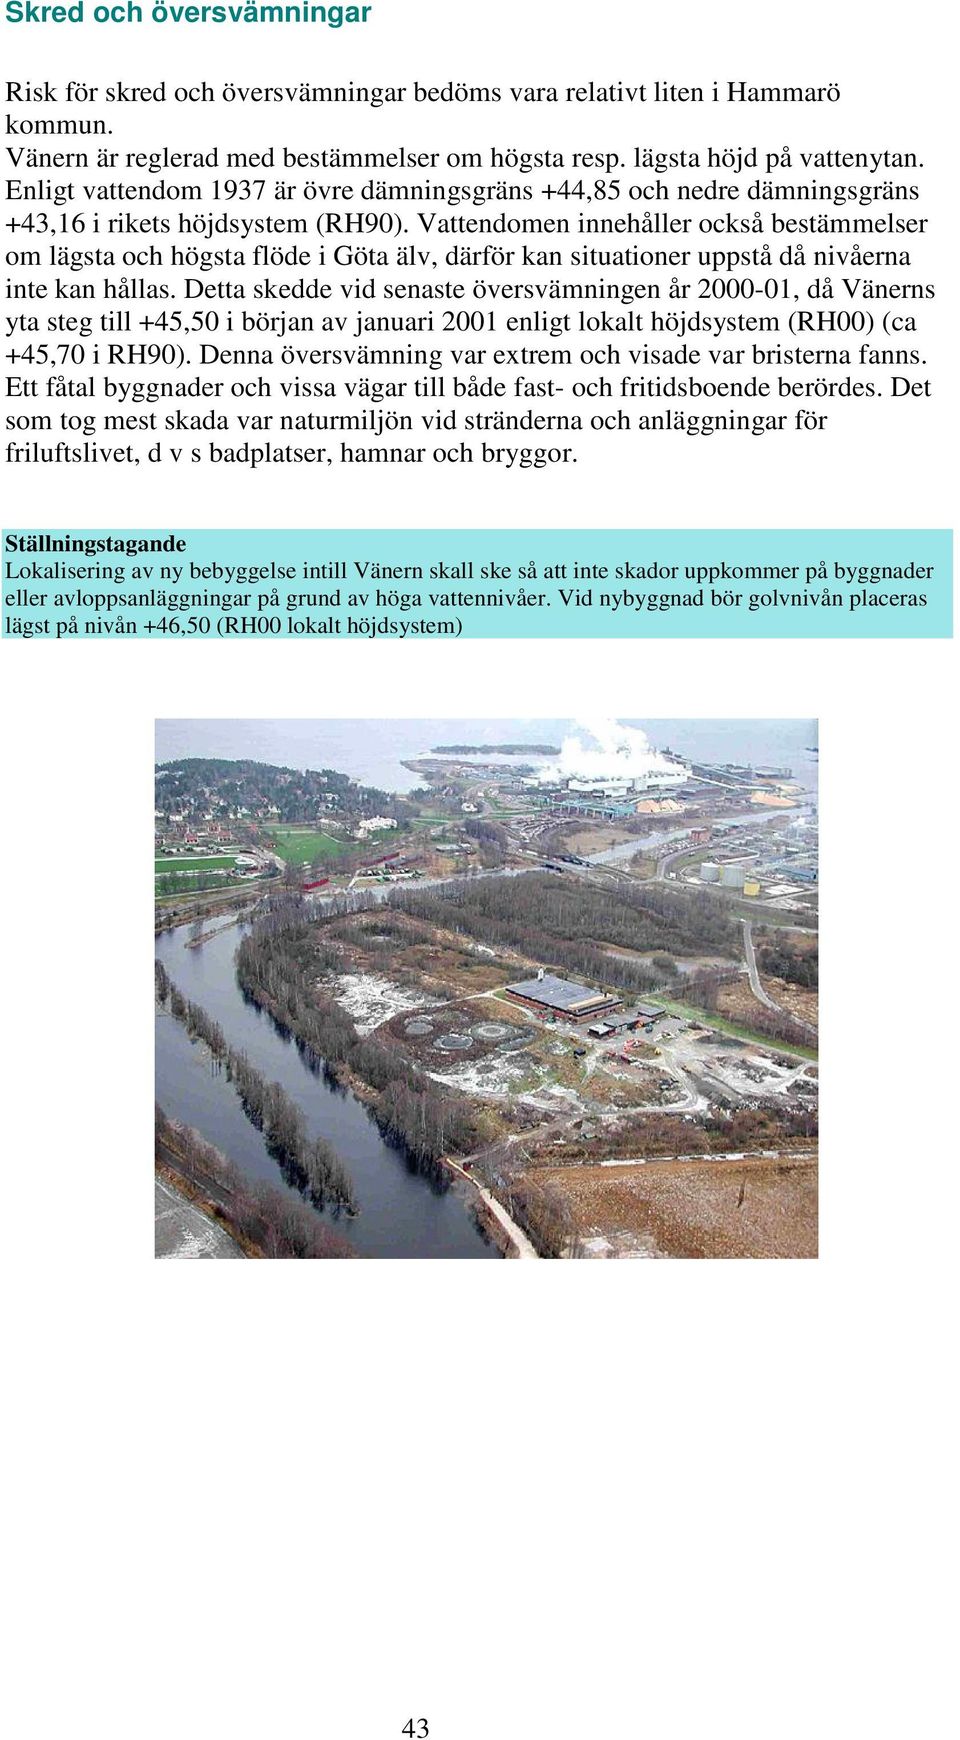 Vattendomen innehåller också bestämmelser om lägsta och högsta flöde i Göta älv, därför kan situationer uppstå då nivåerna inte kan hållas.